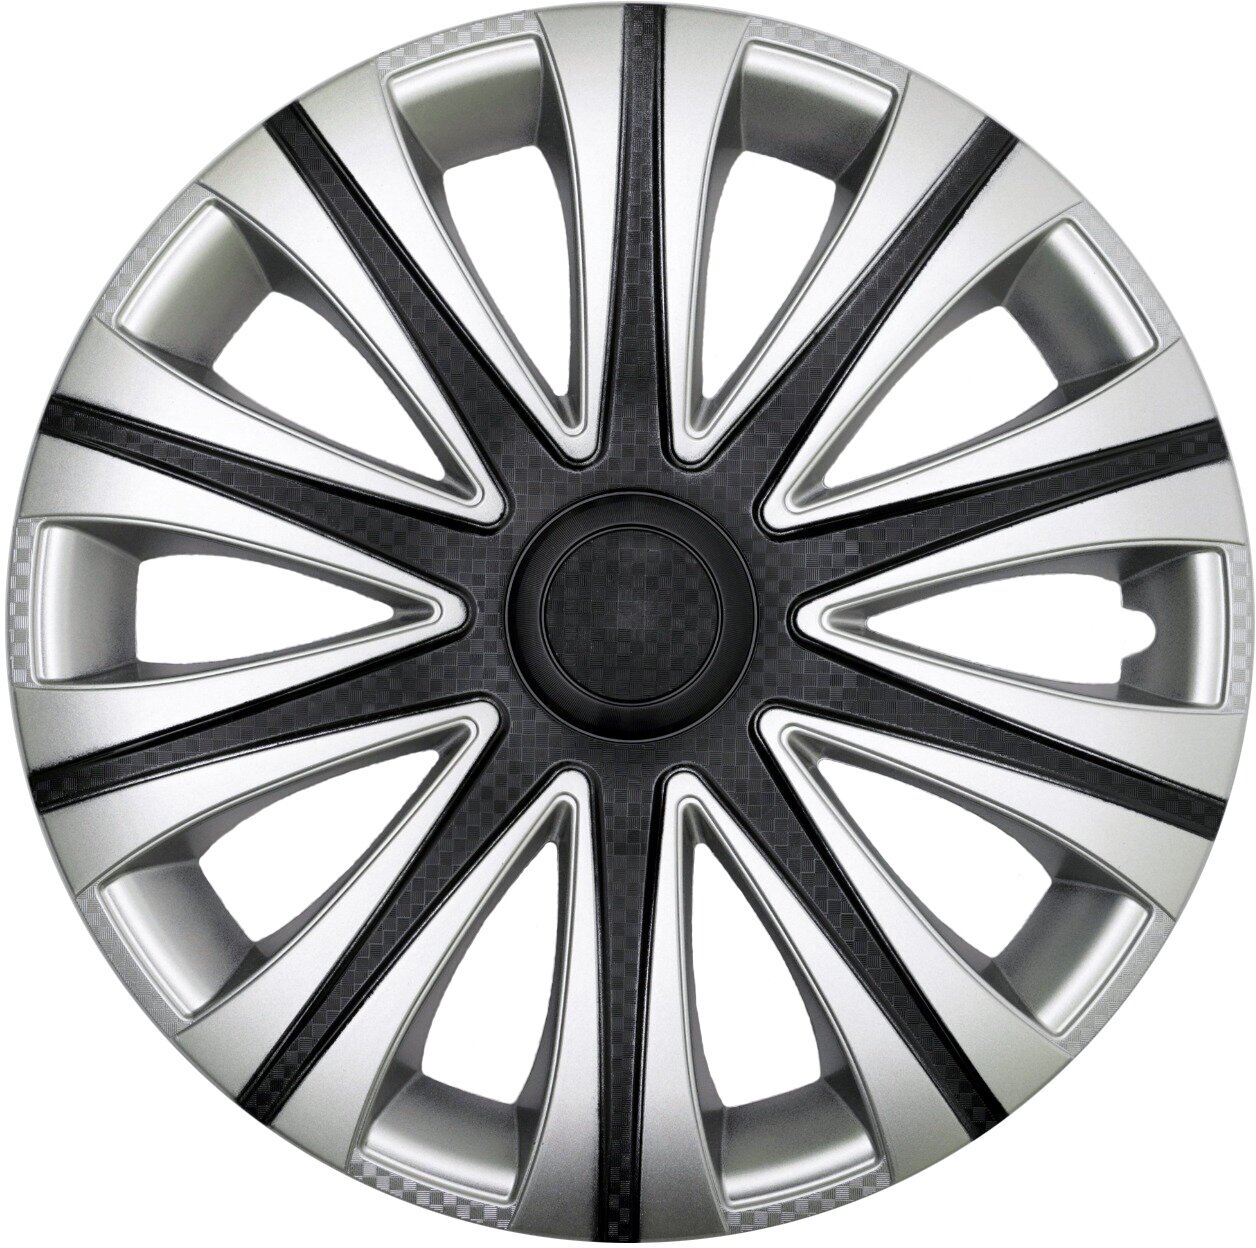 Колпаки R14 4шт на колеса авто MАЙ SUPER BLACK р14, на диски радиус 14 дюймов, цвет серый, серебристый, черный карбон.